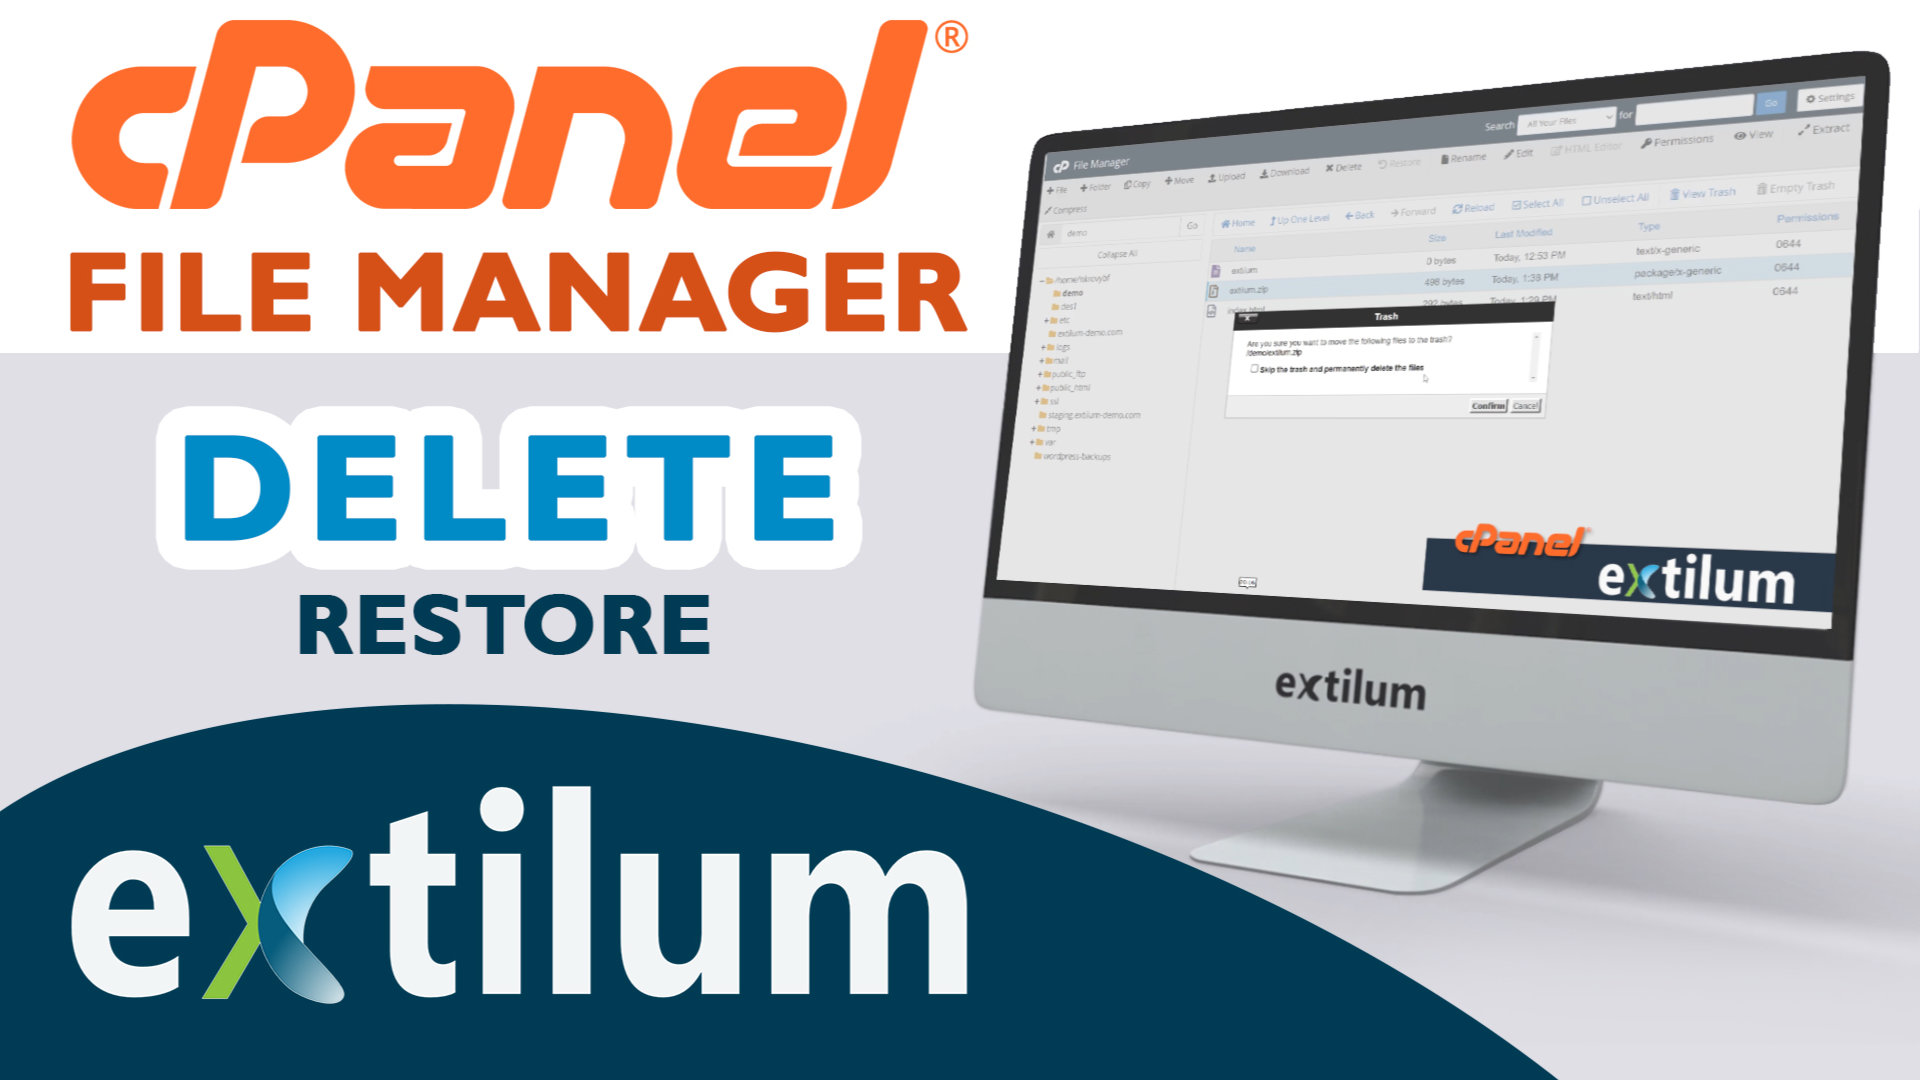 Extilum cpanel - file manager - delete - restore